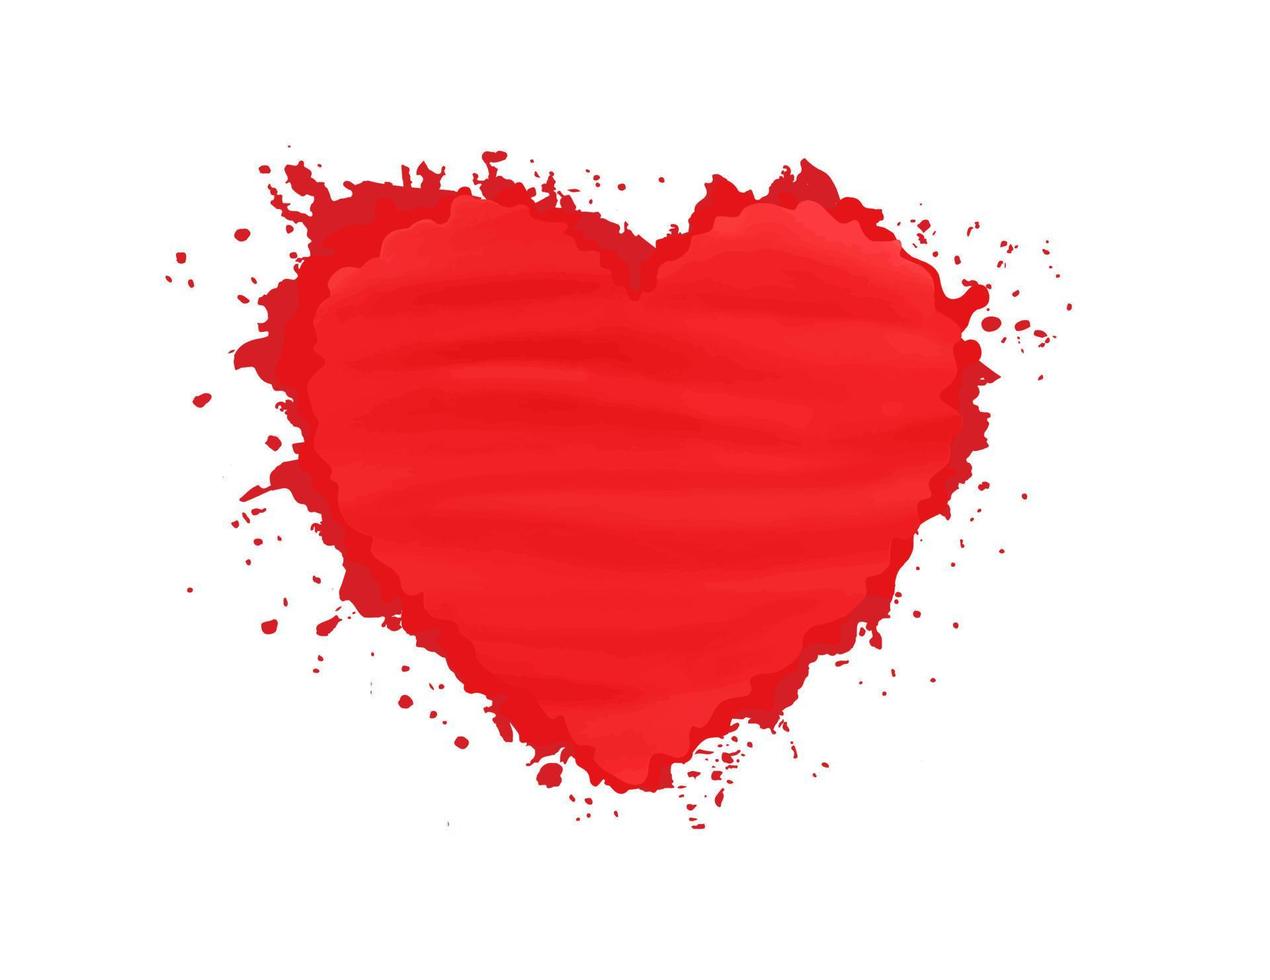 peinture aquarelle abstraite coeur rouge isolé sur fond blanc. conception de vecteur de concept de forme d'amour splash aquarelle créative et élégante pour la bannière, le papier peint, la carte et les médias sociaux